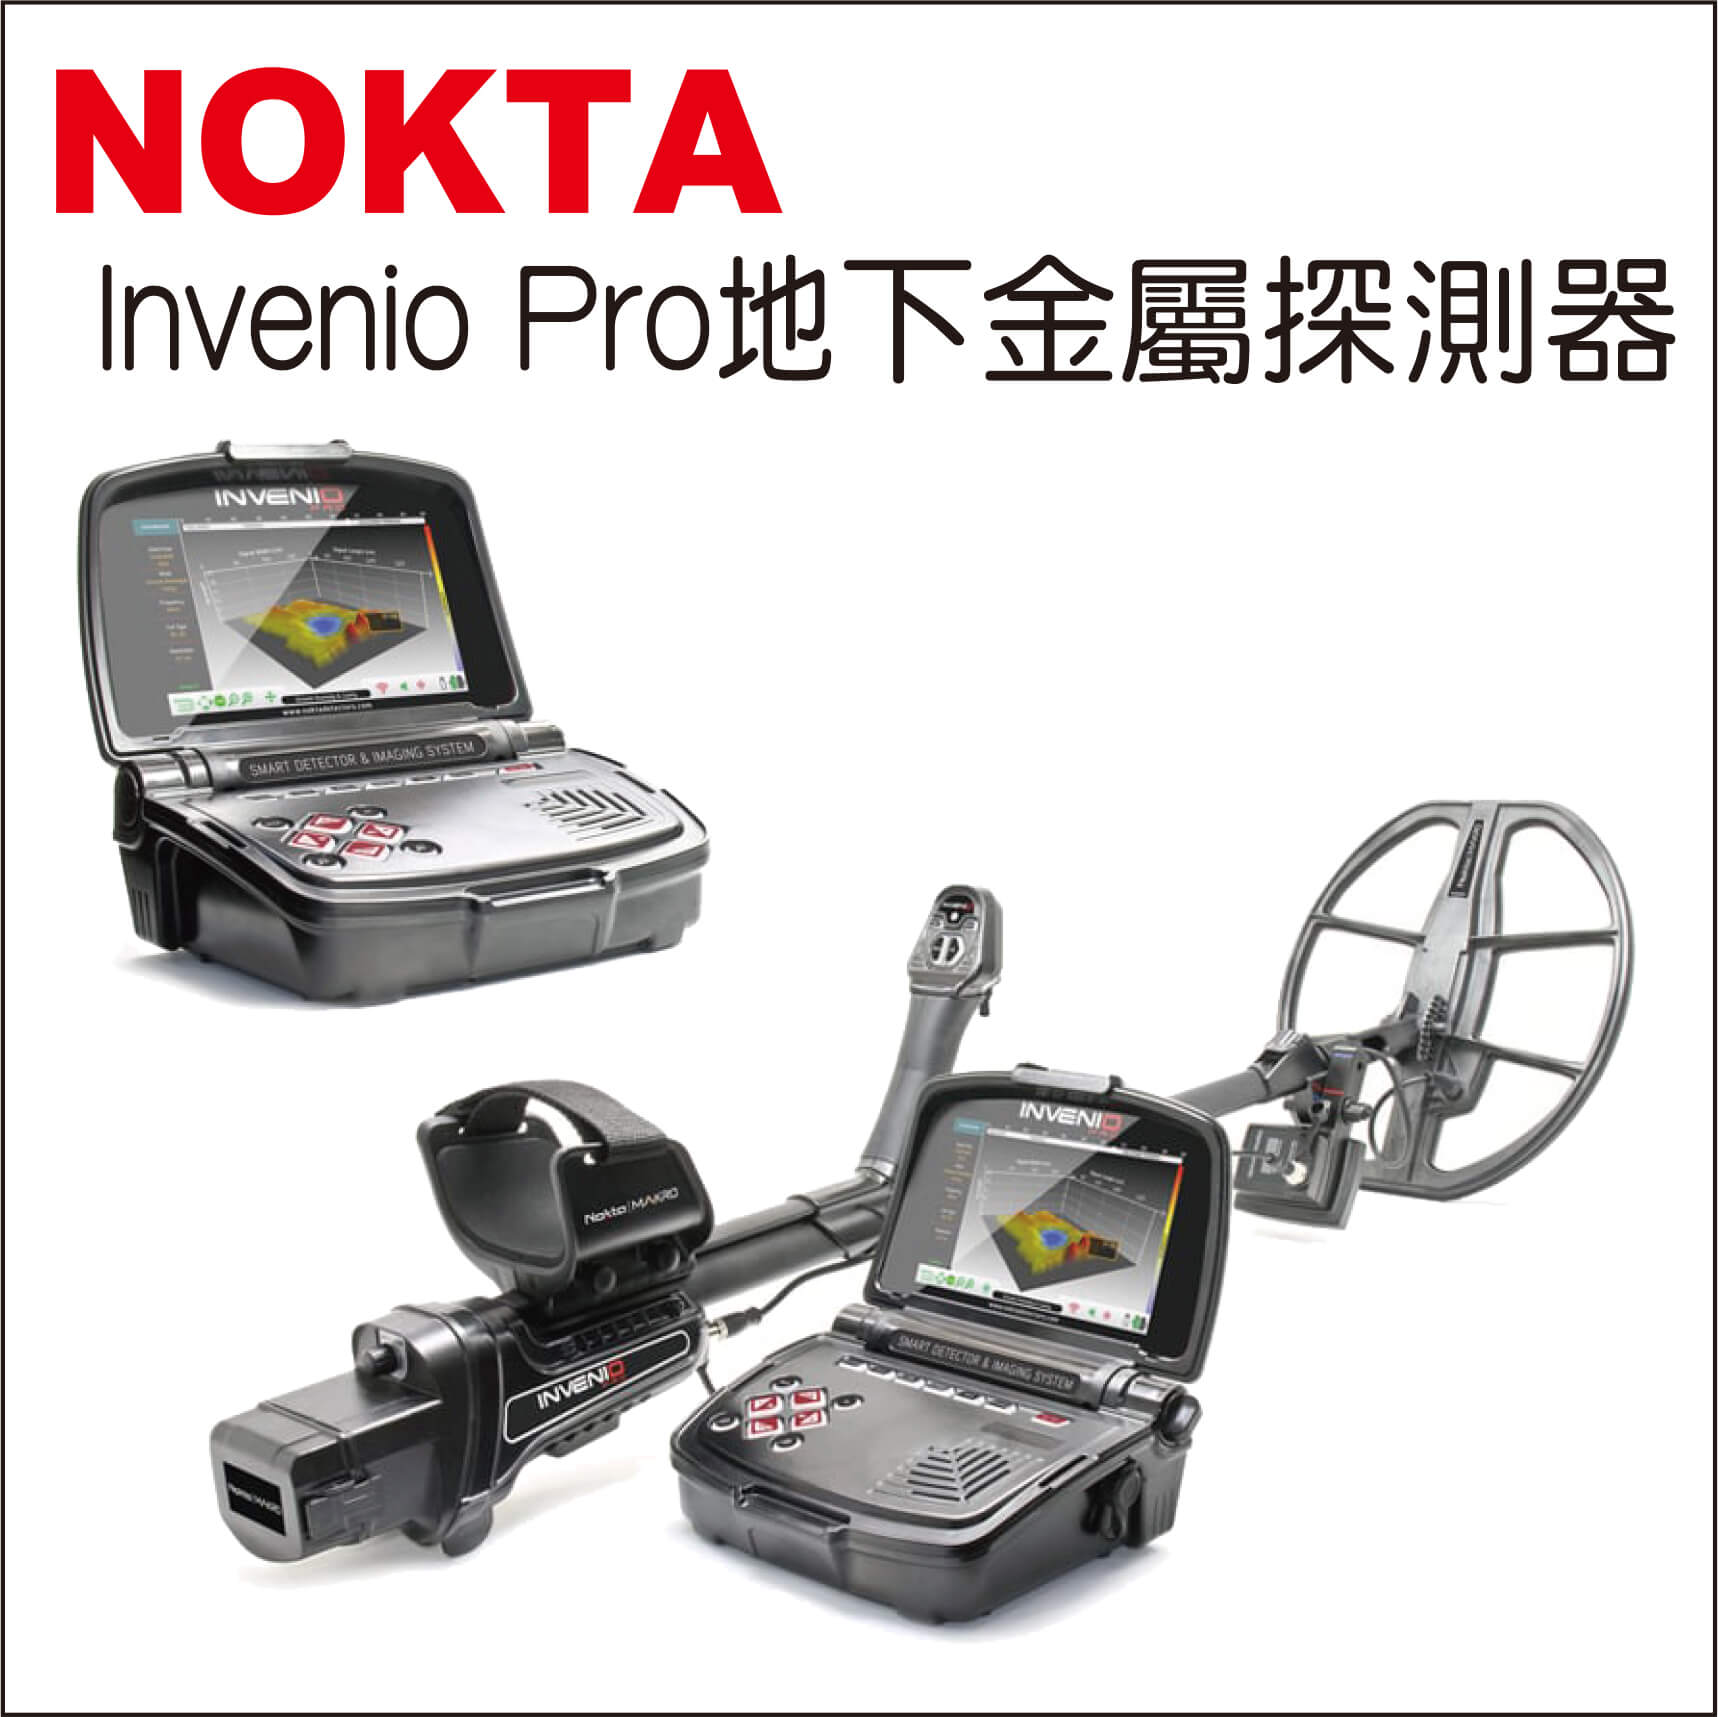 NOKTA Invenio Pro地下金屬探測器的第1張圖片